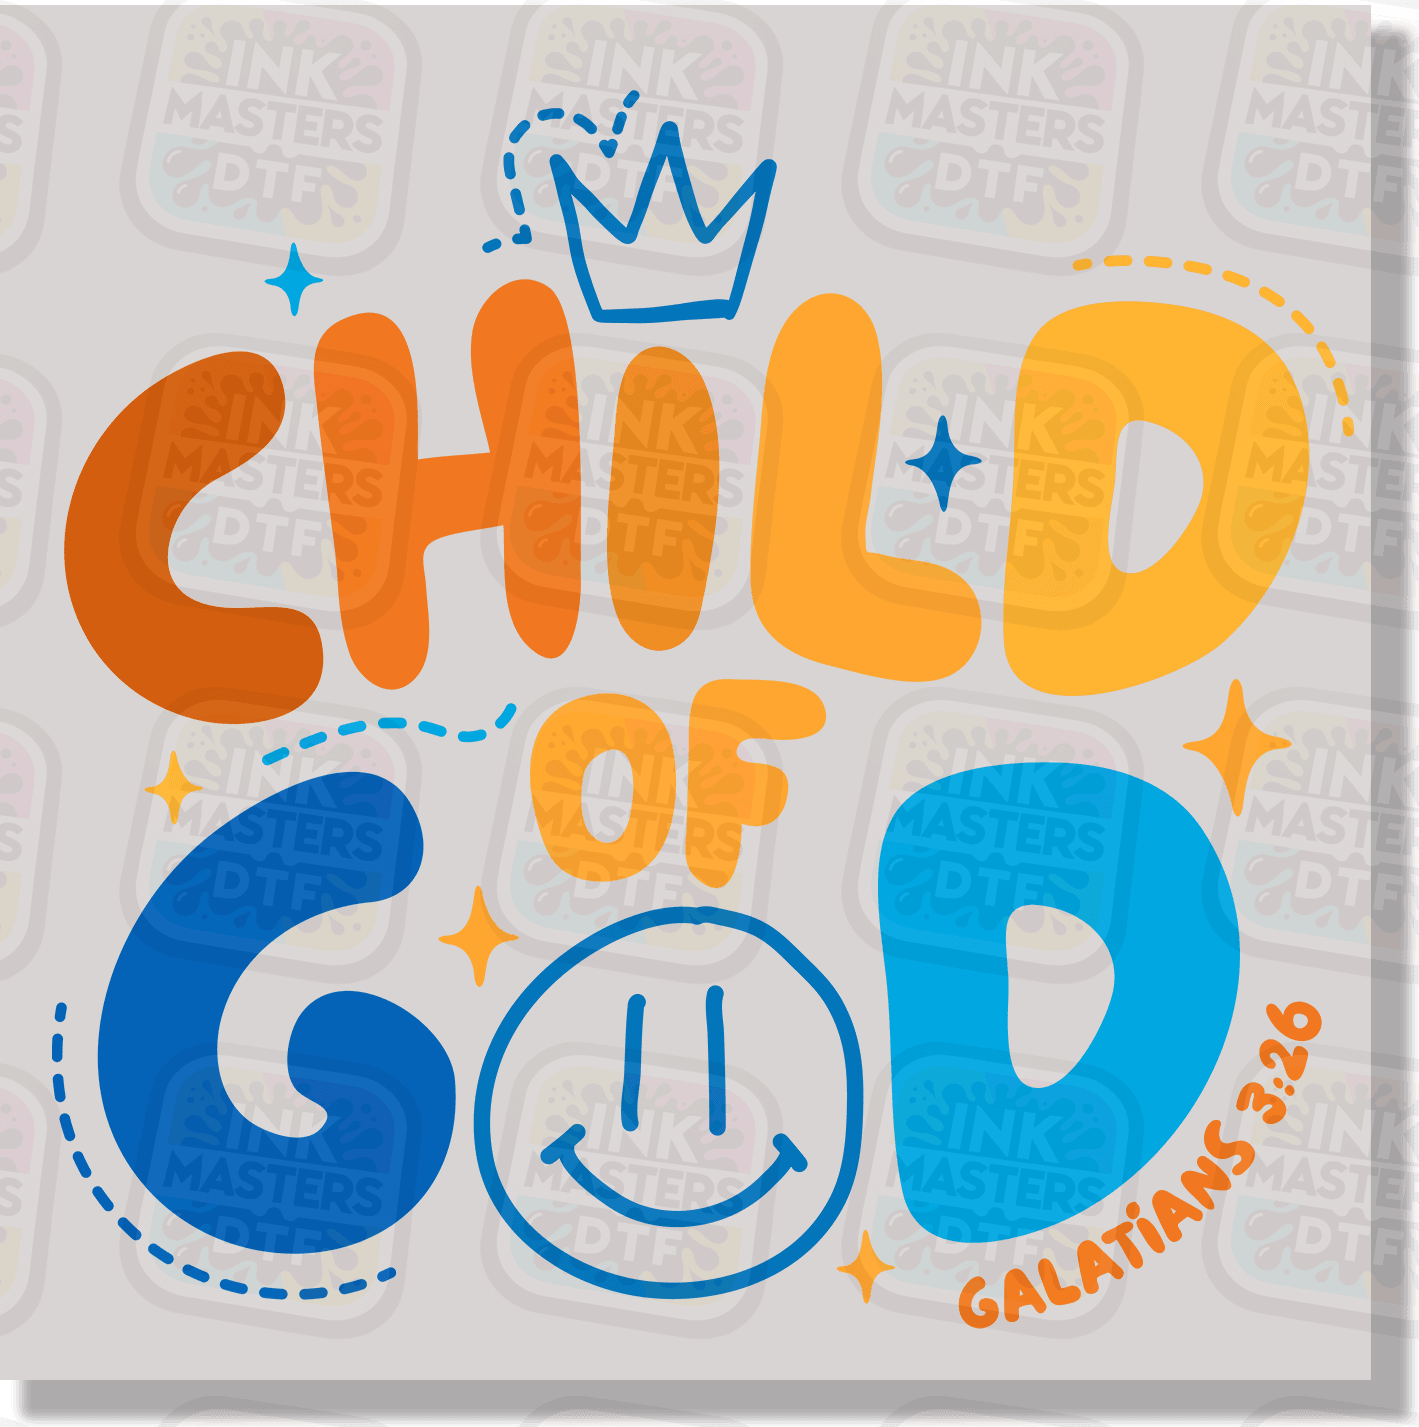 Child Of God DTF Transfer - Ink Masters DTF